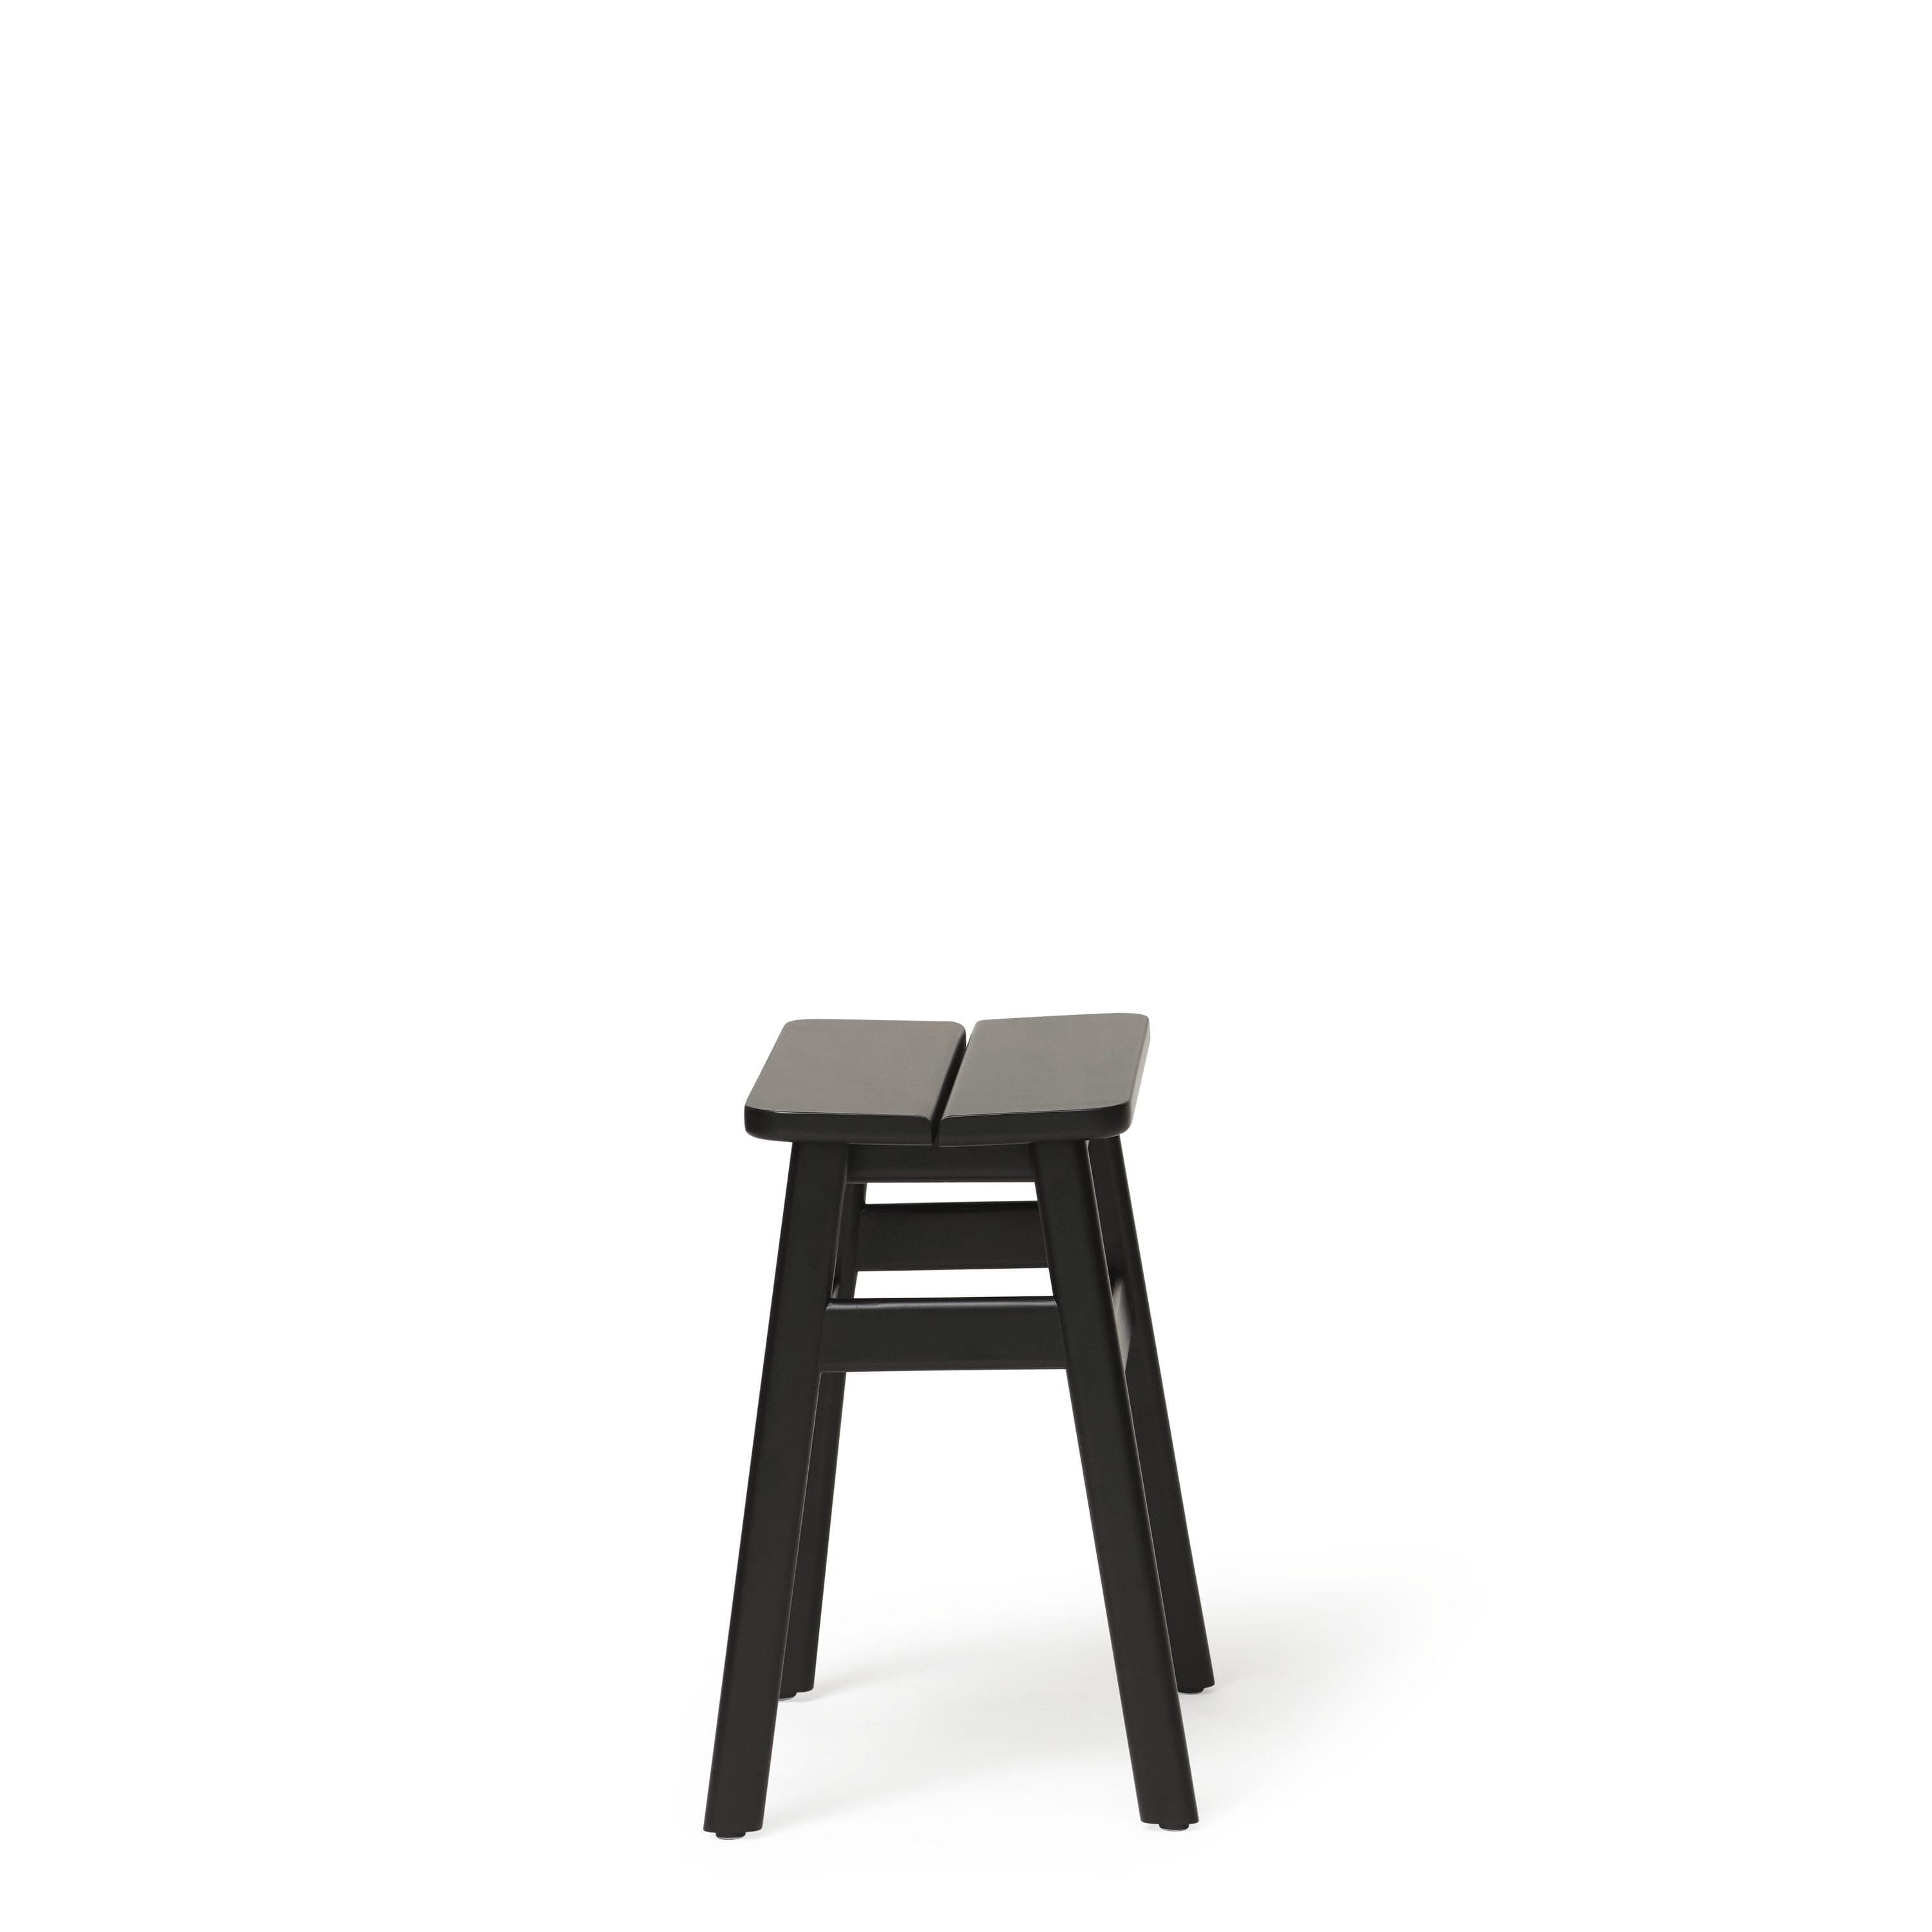 Form & Refine Angle Standard Stuhl 45 cm. Schwarz gefärbte Buche